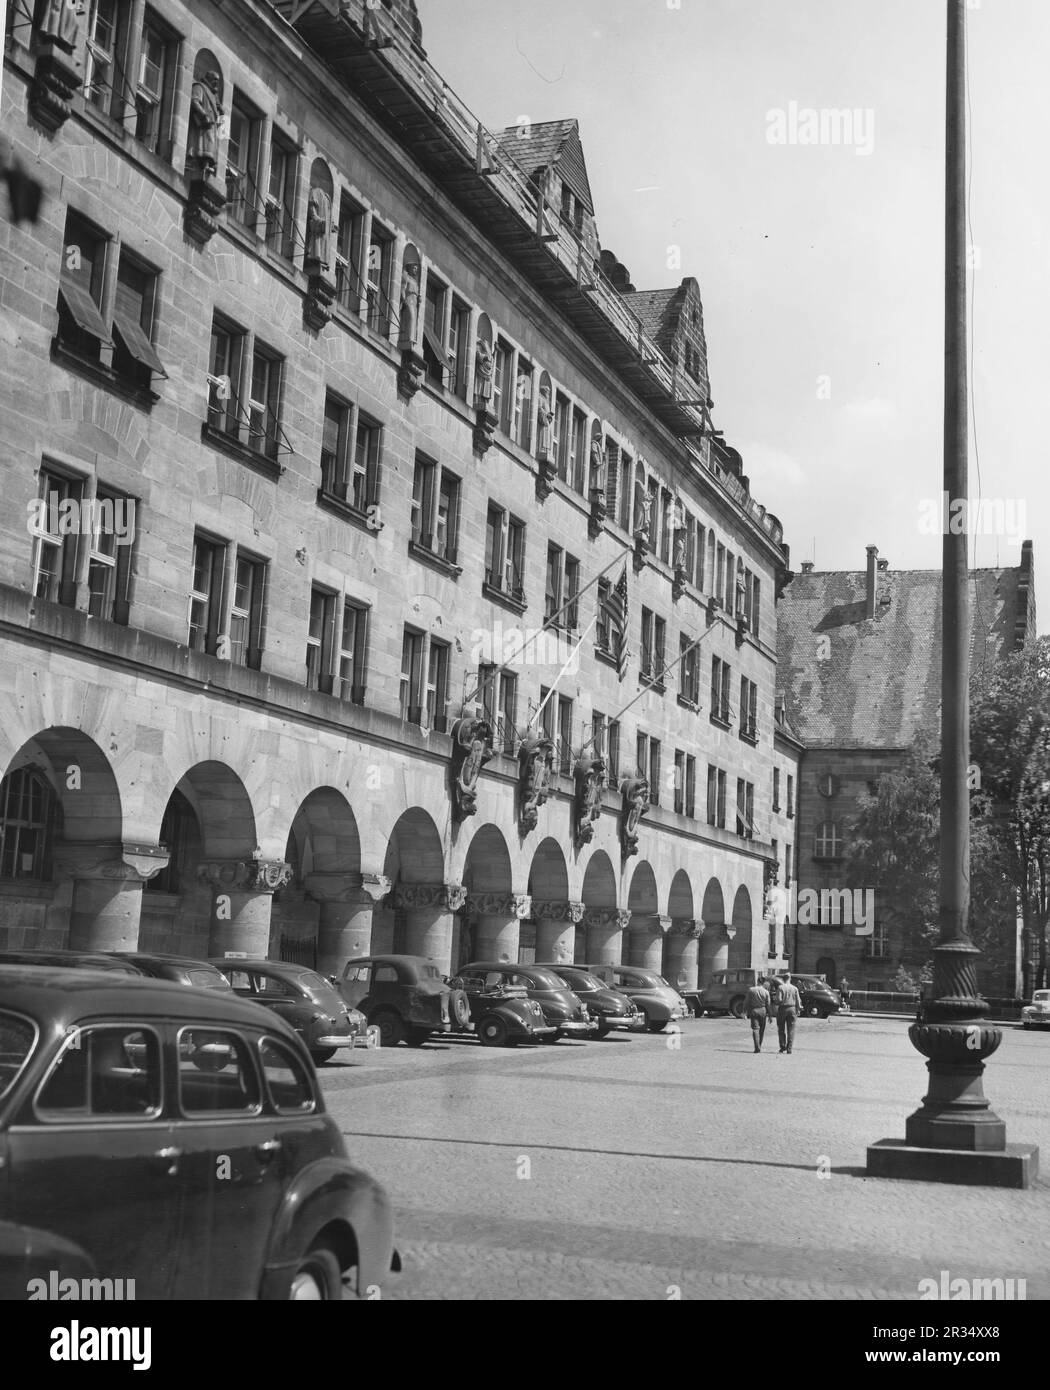 Le célèbre palais de justice de Nuremberg, où le procès des criminels de guerre nazis a eu lieu en 1945. Banque D'Images